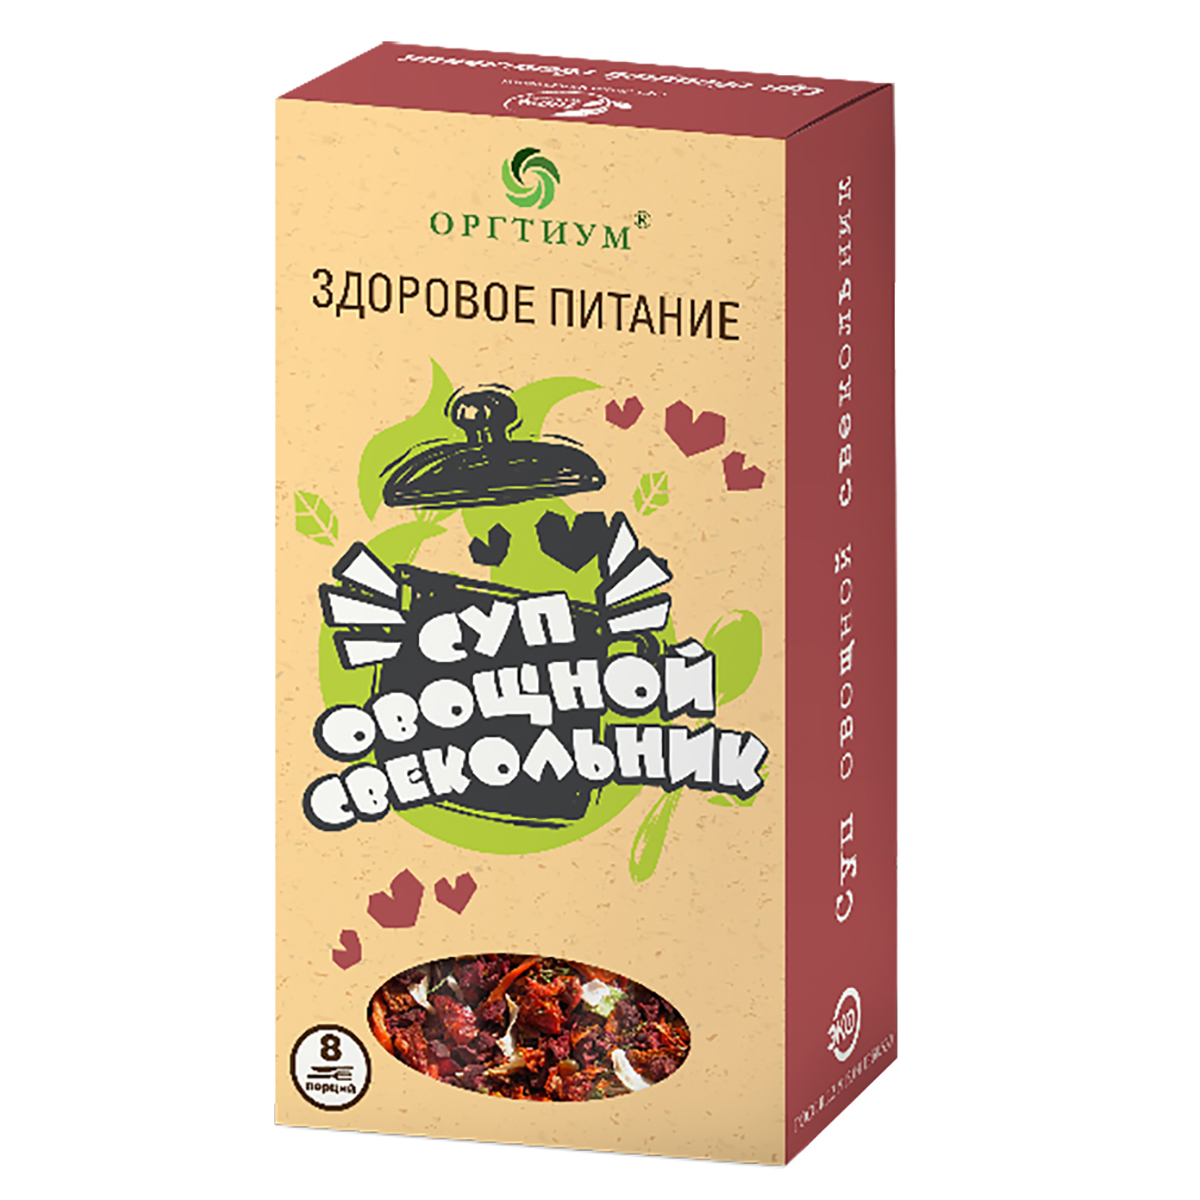 Суп овощной свекольник 180 гр, Оргтиум